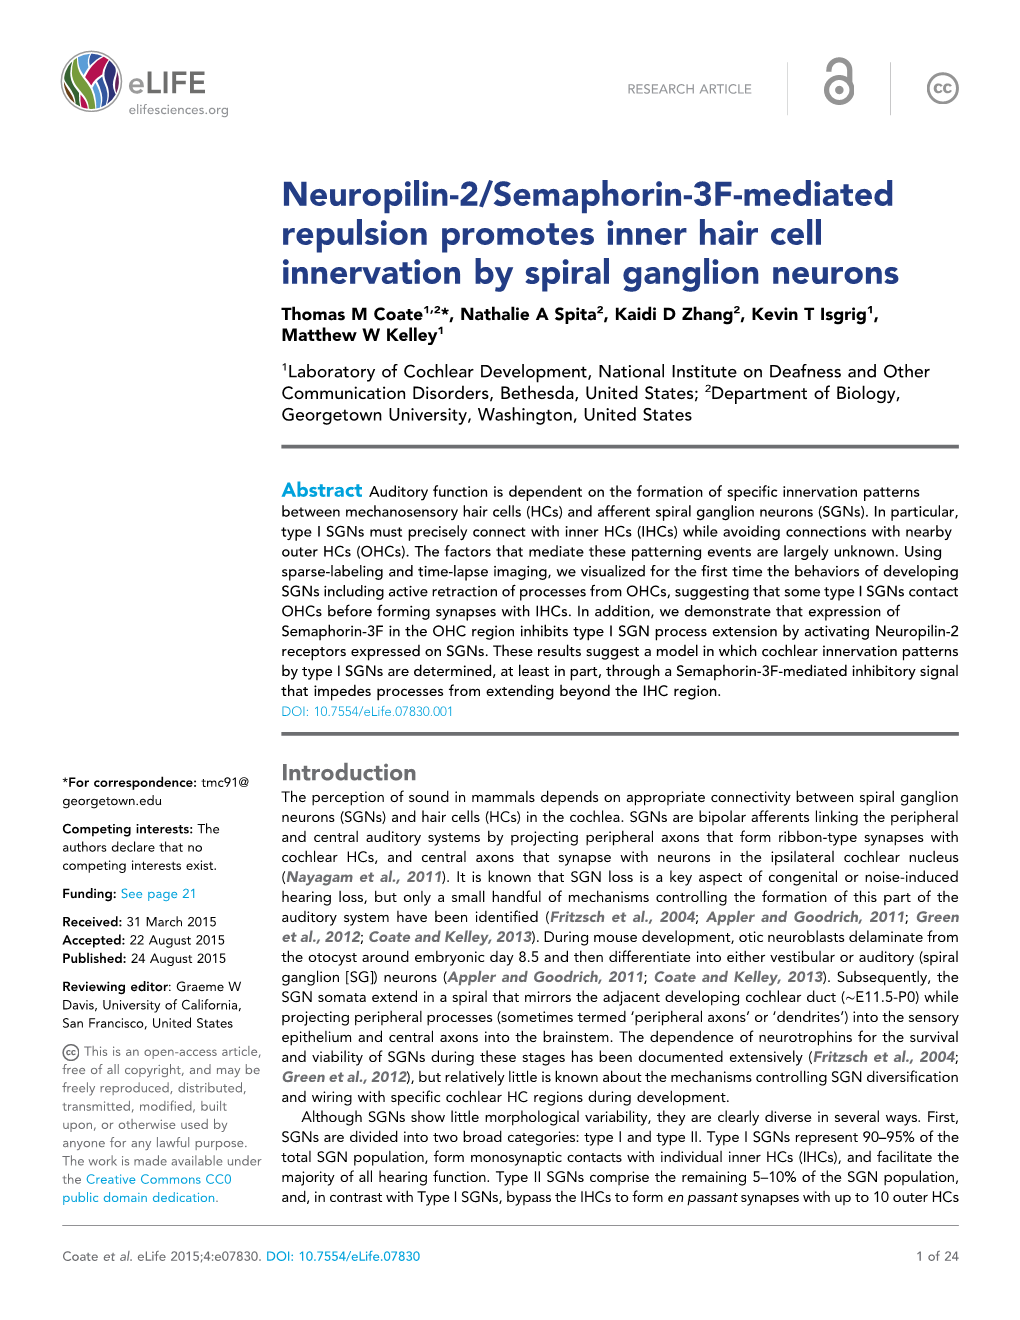 Neuropilin-2/Semaphorin-3F